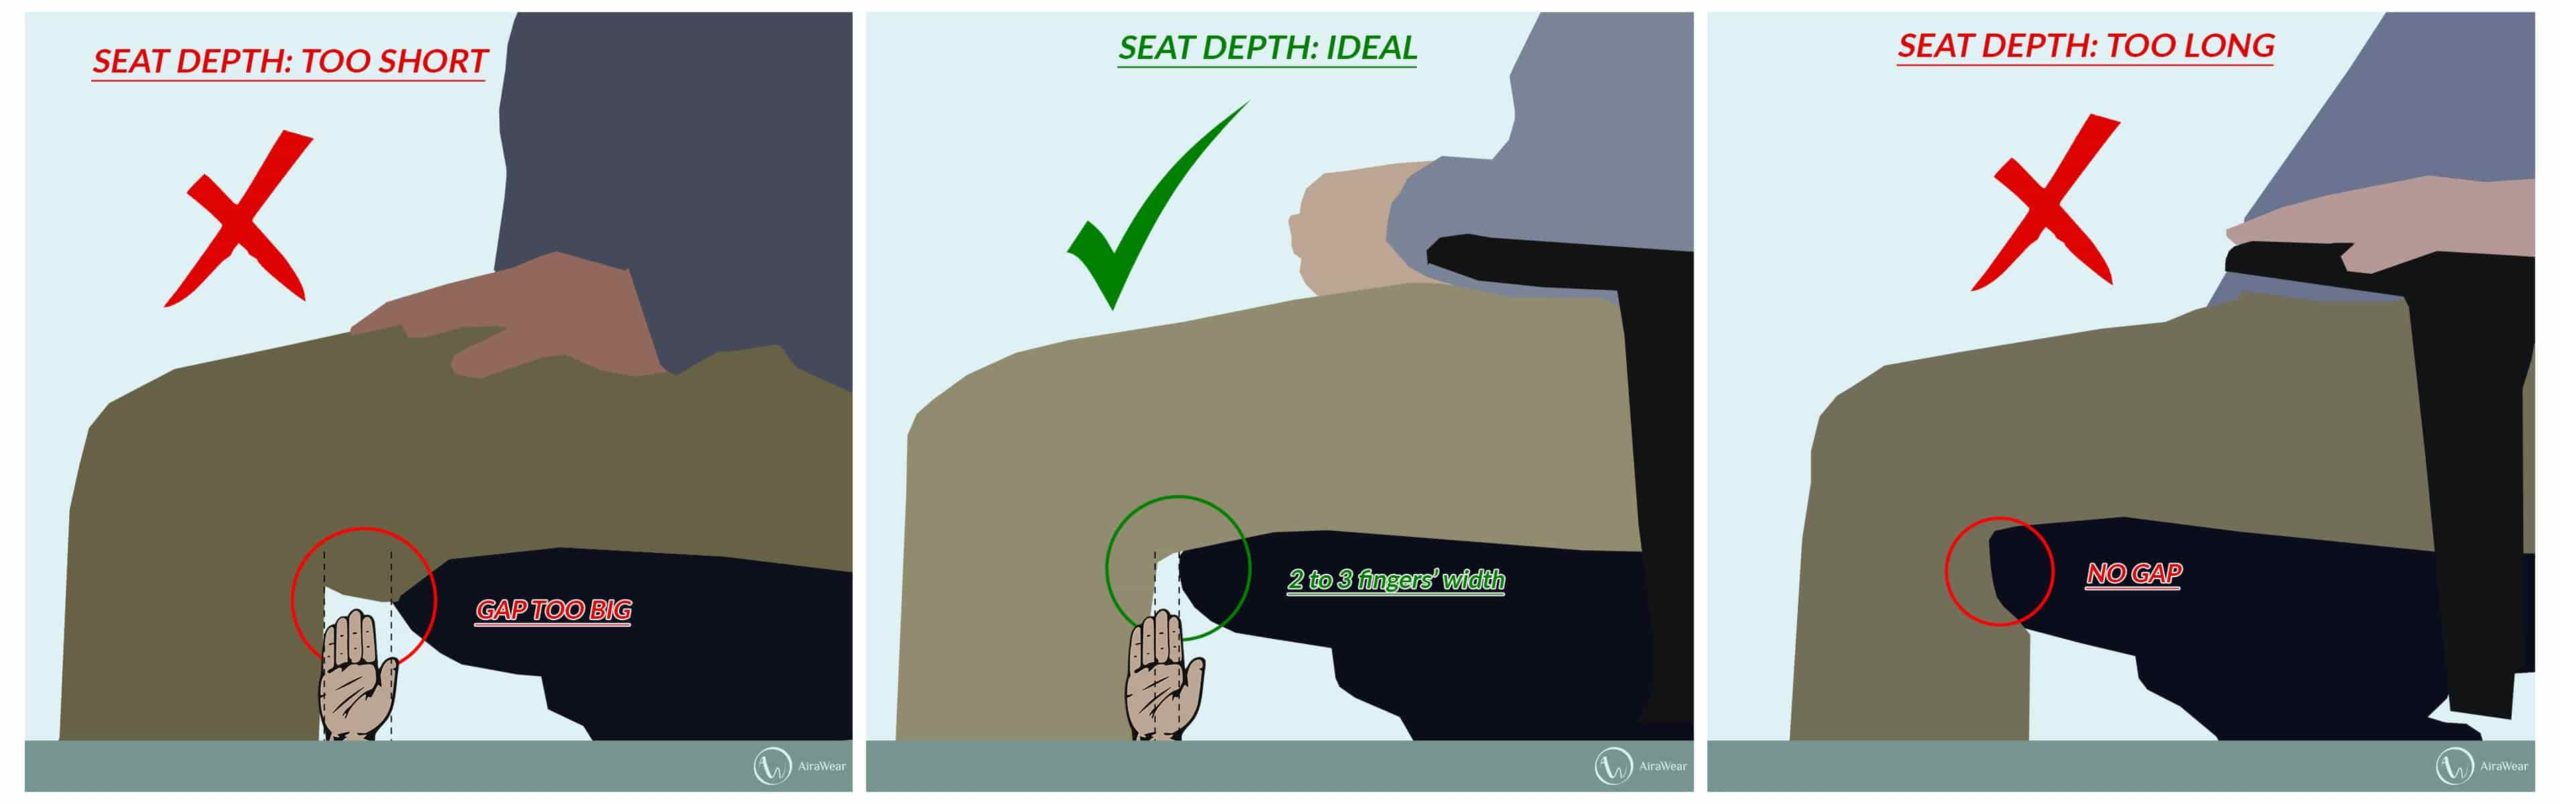 Ergonomic Seat Depth